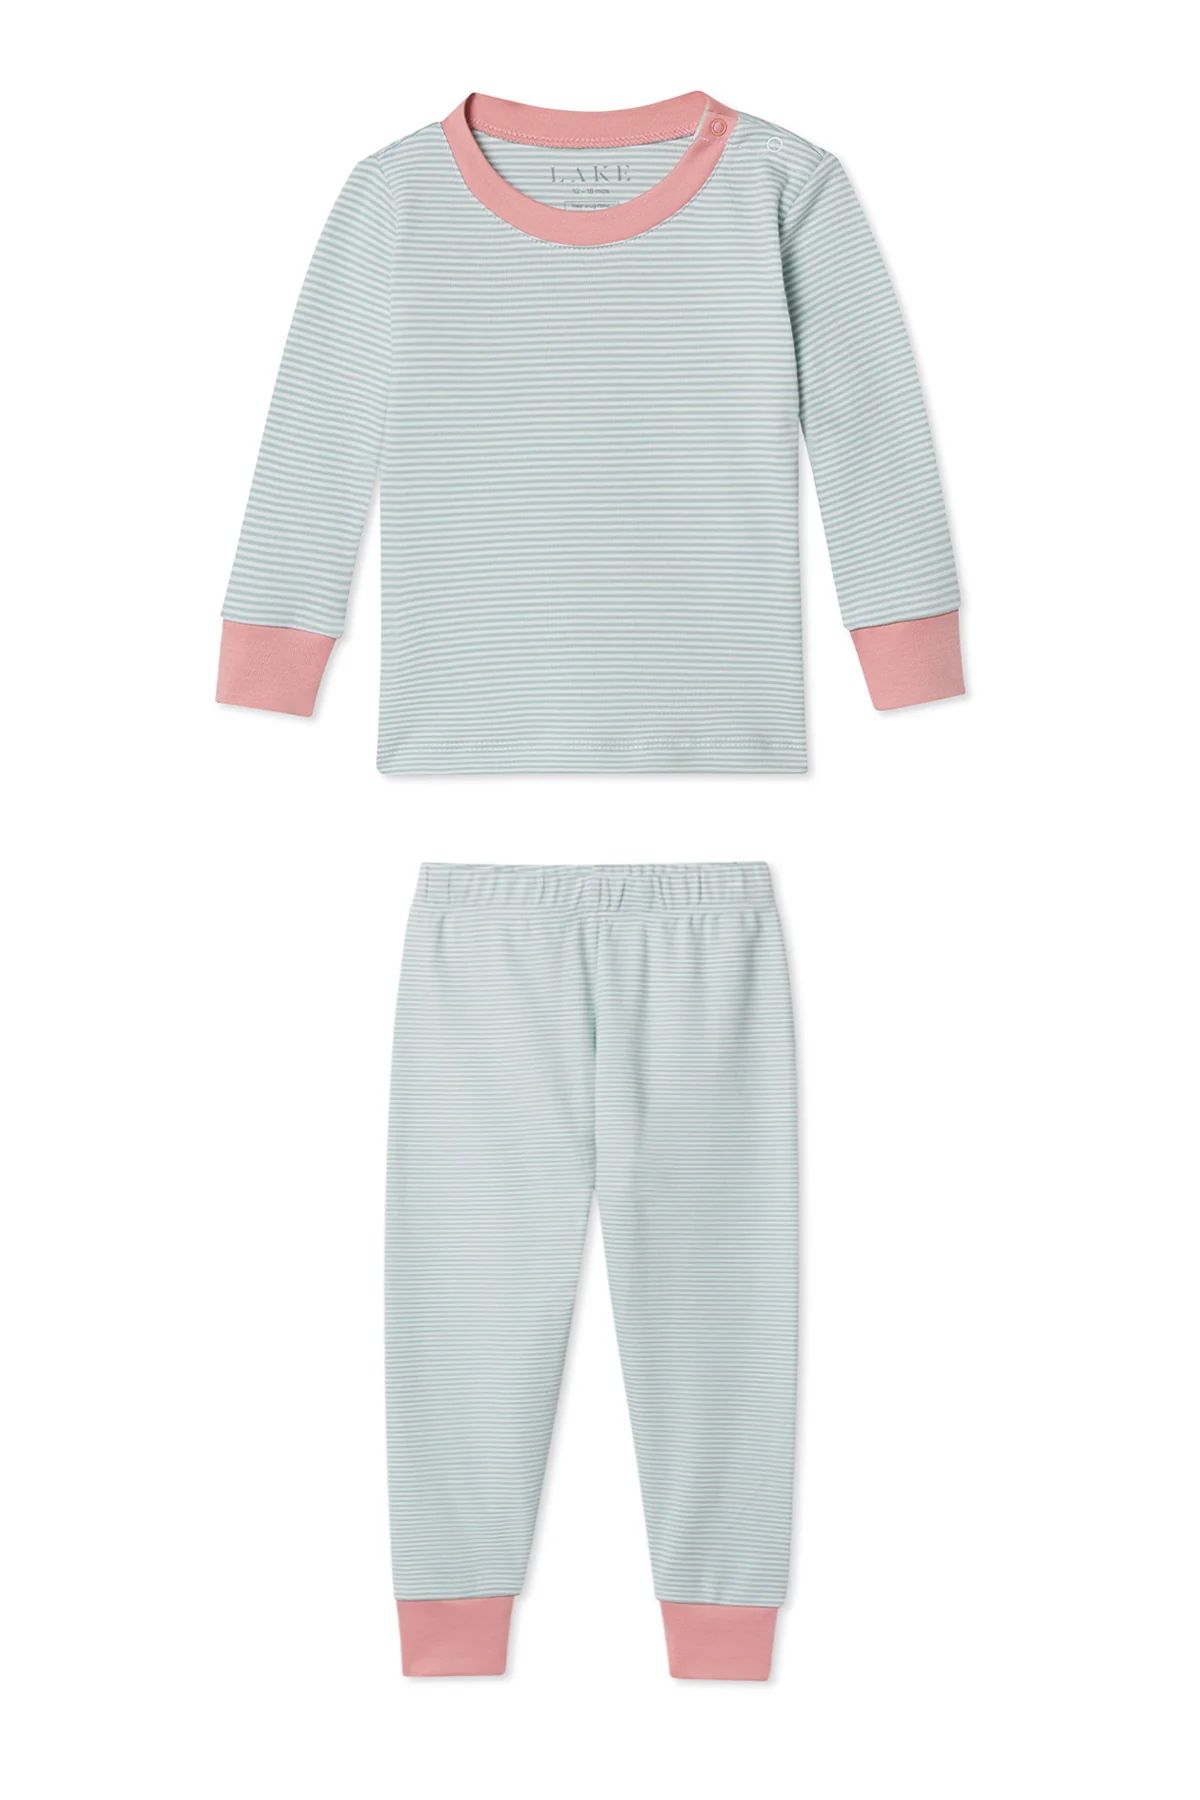 Organic Pima Baby Long-Long Set in Sage | LAKE Pajamas